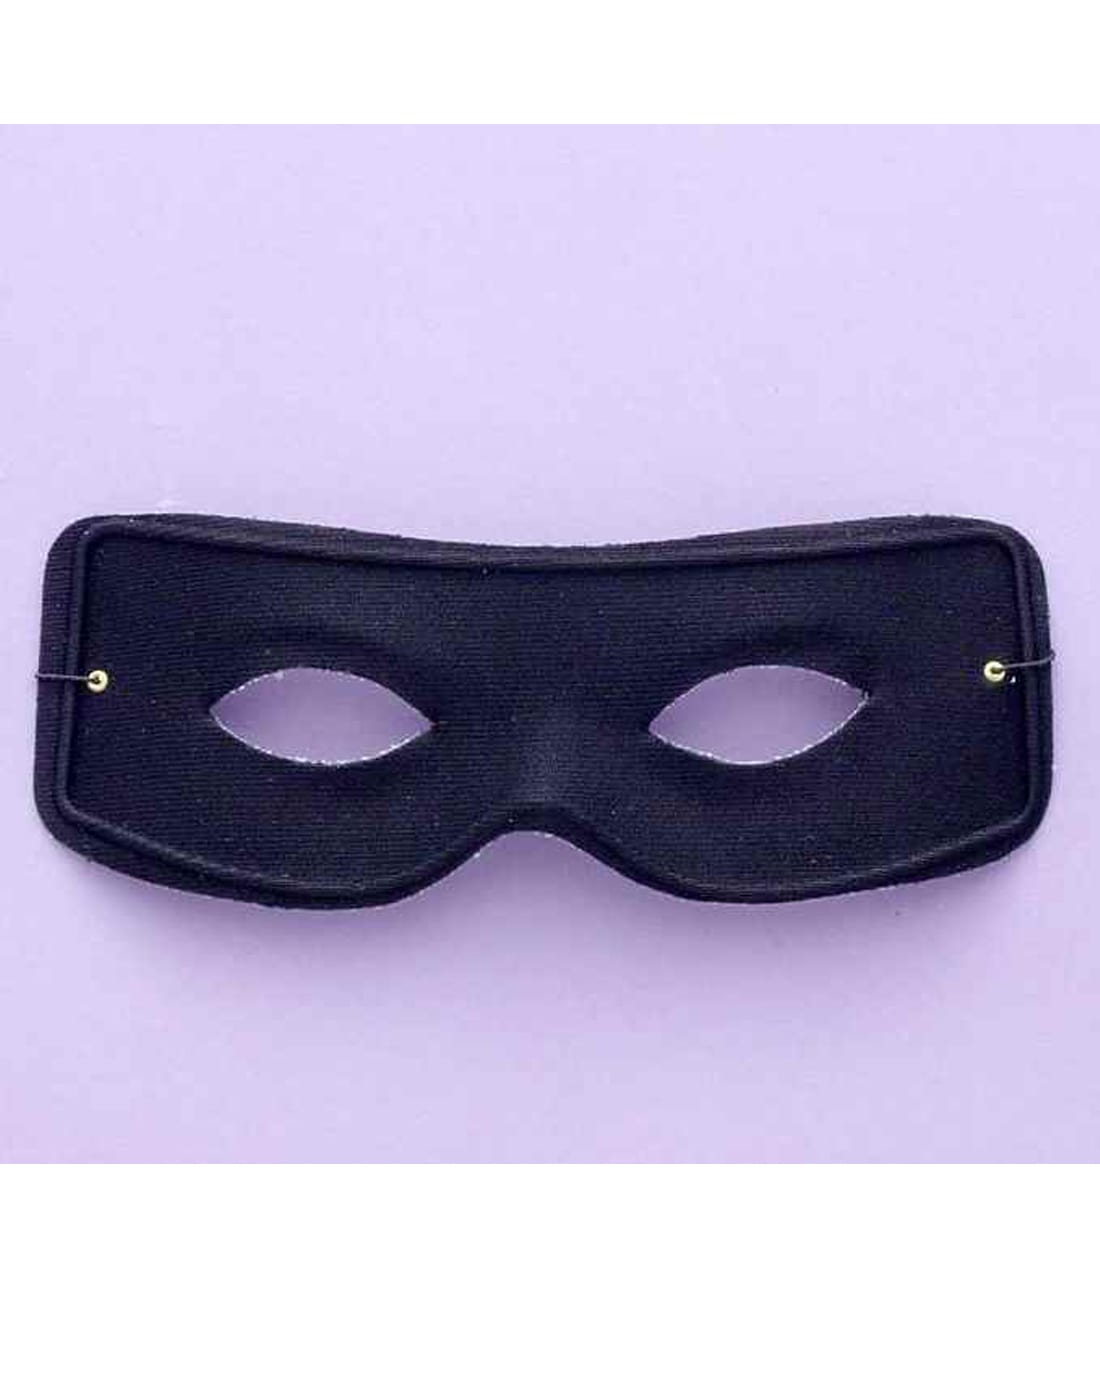 Masked Man Mask w/ Ties 11